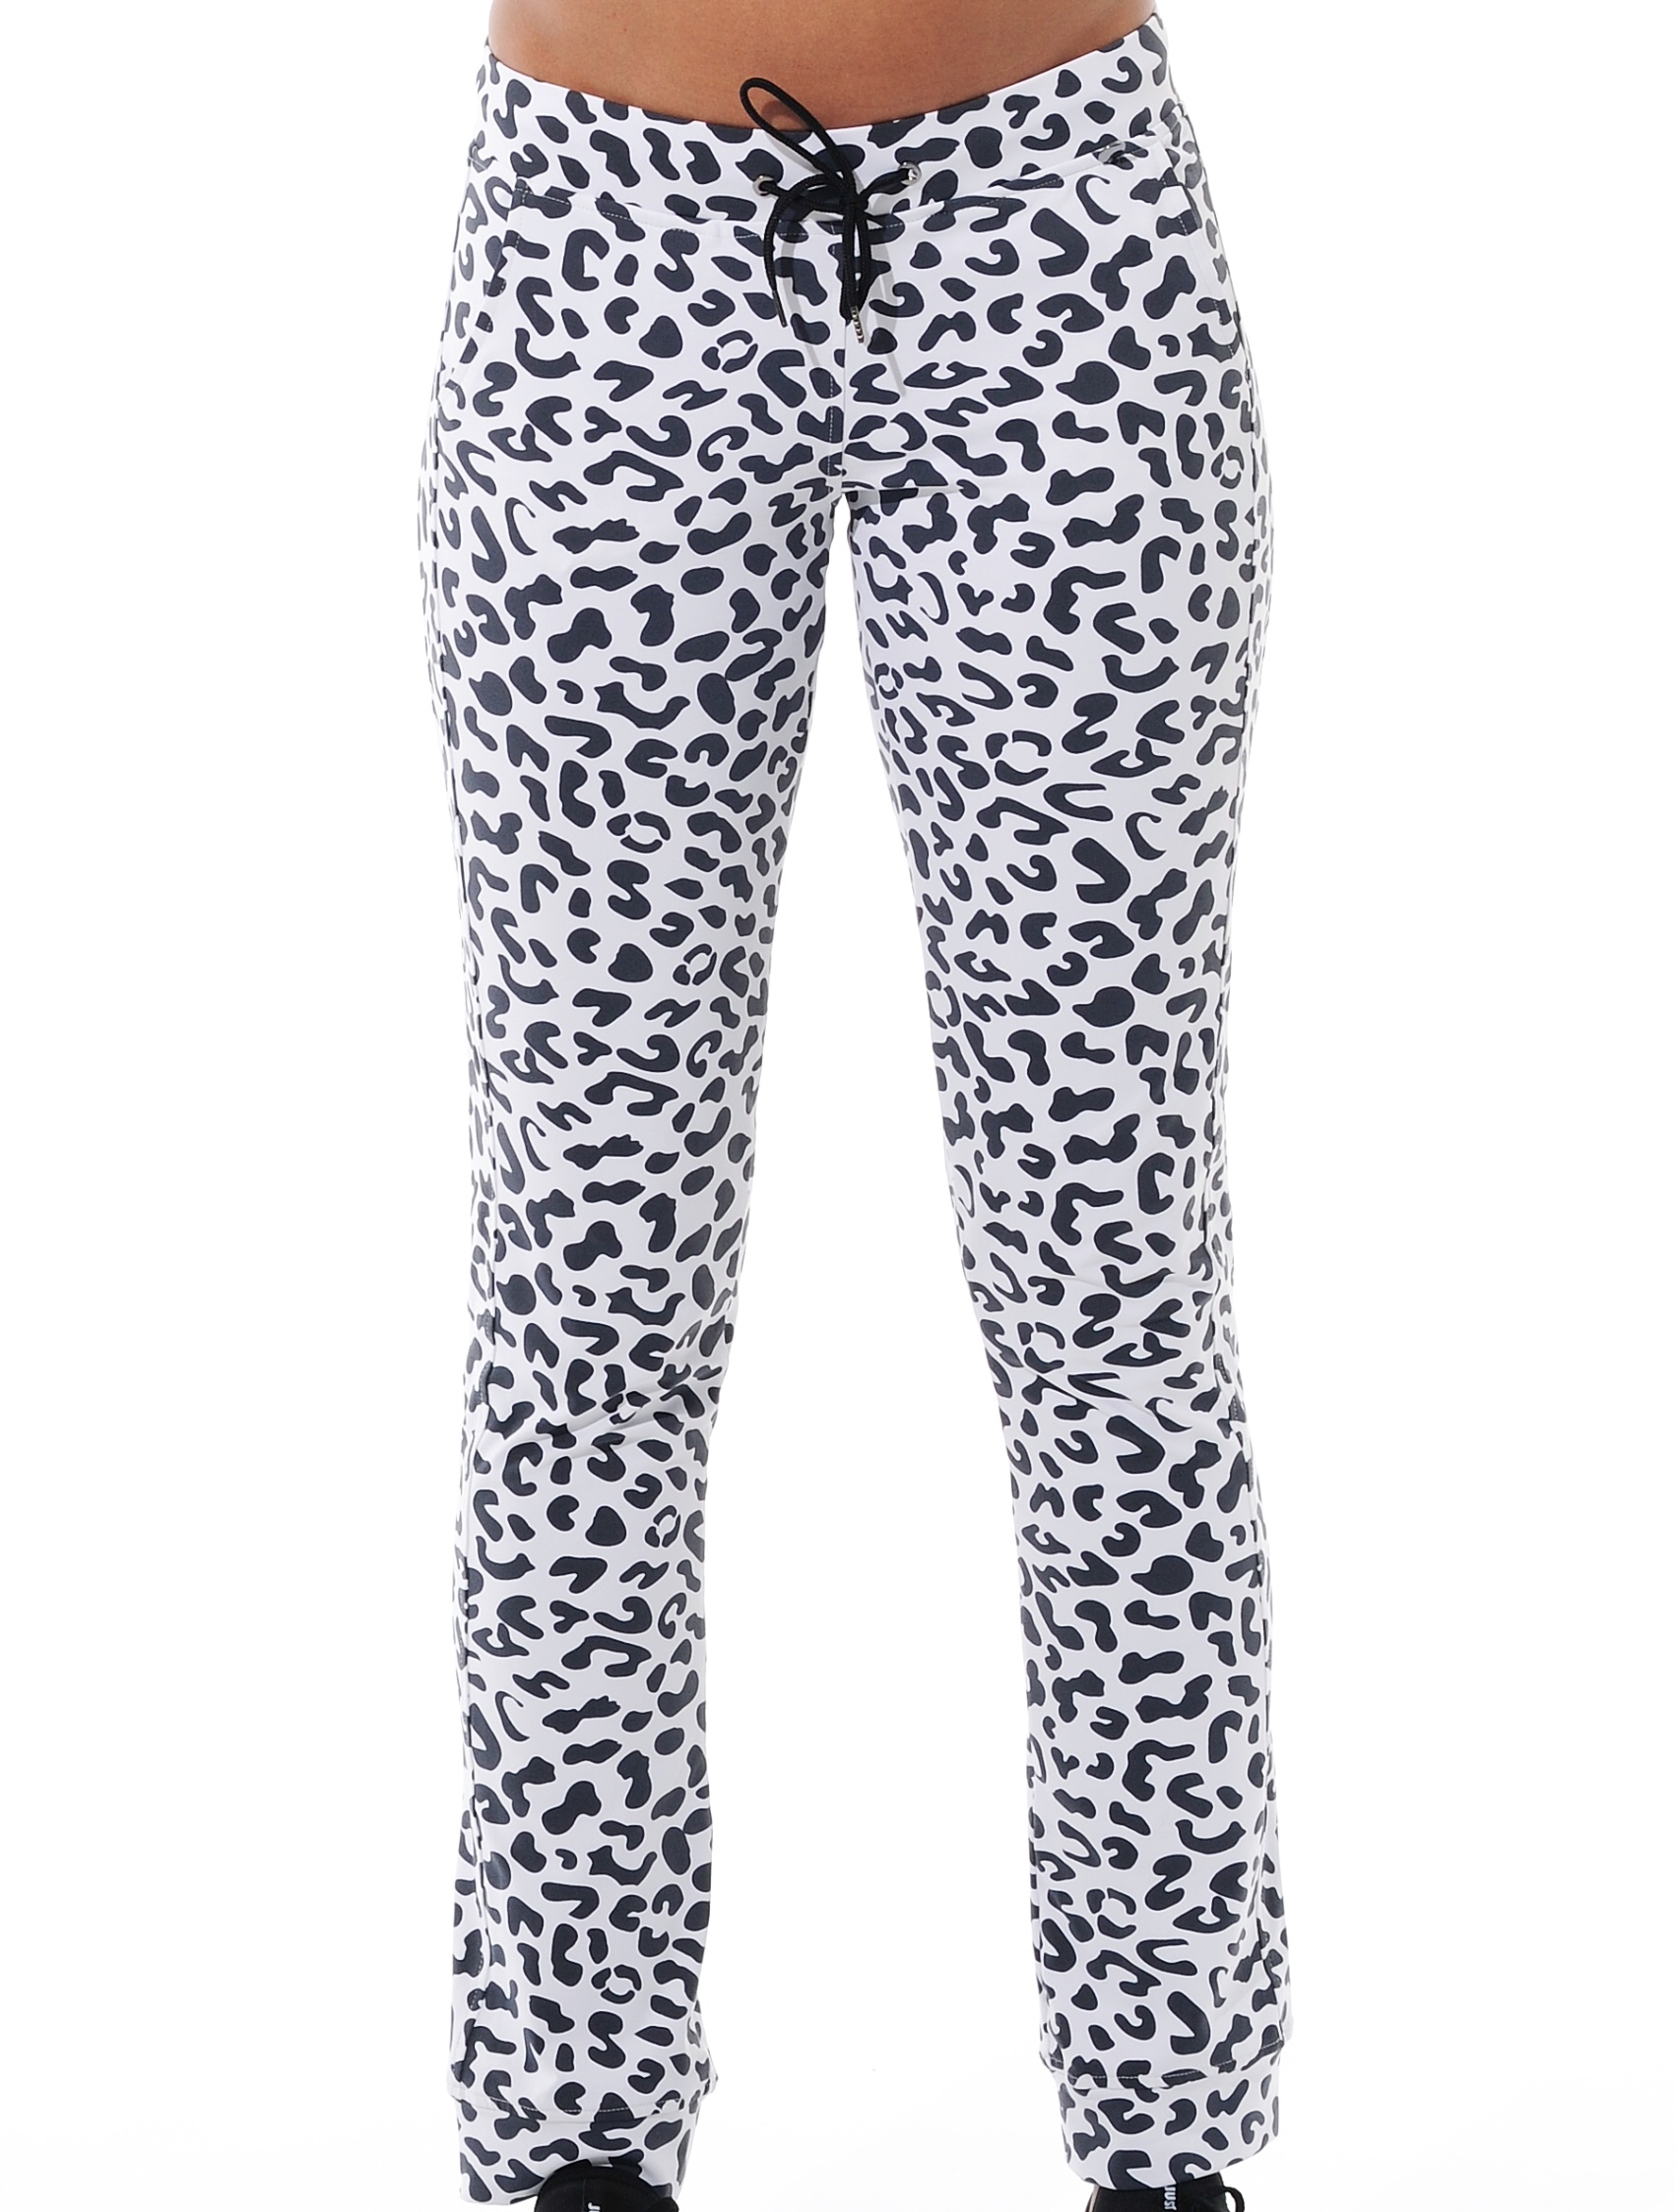 Jaguar print track pants black/white 